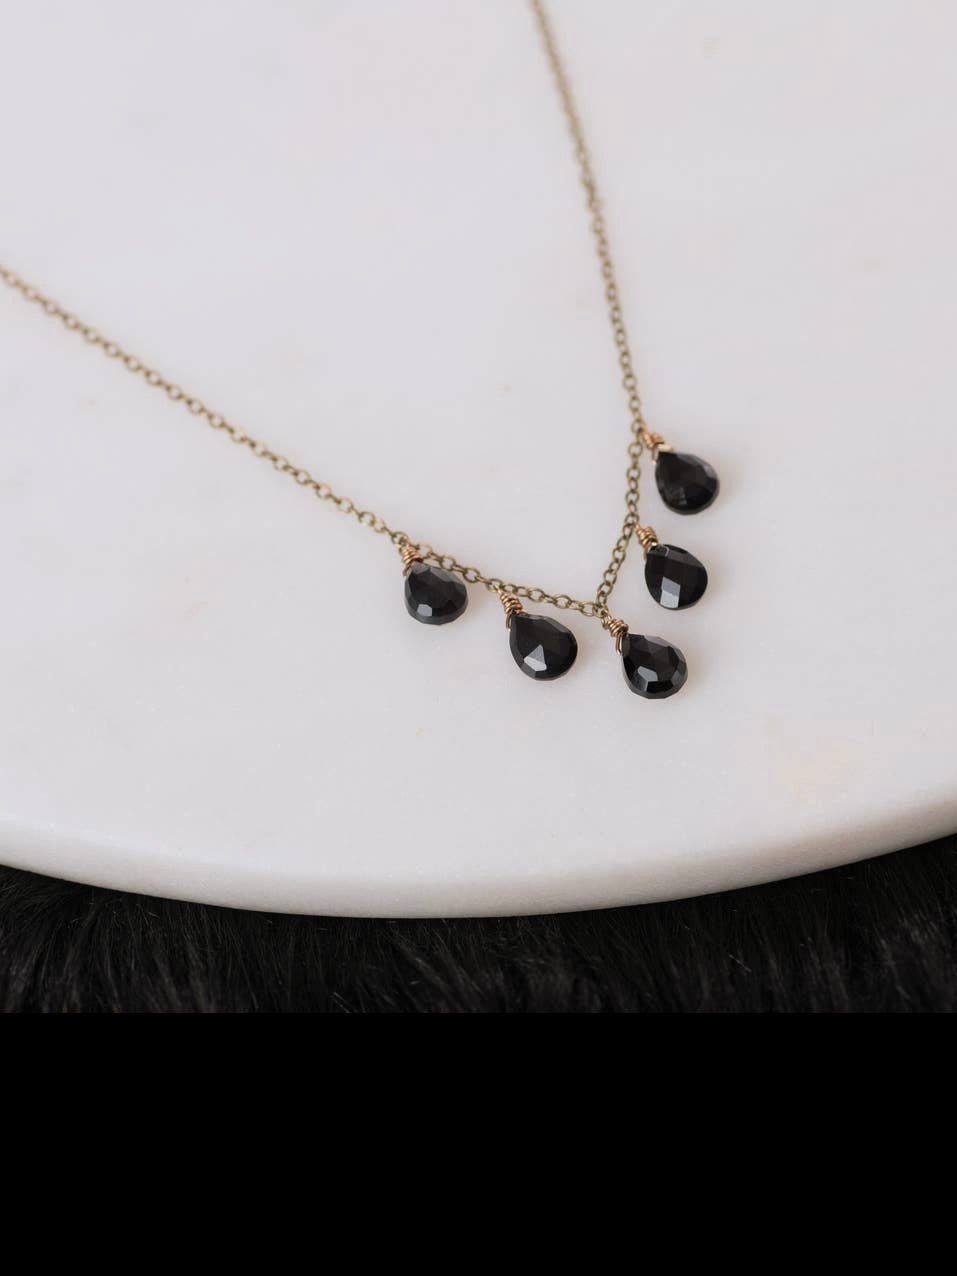 Dainty 5 Stone Black Onyx Necklace